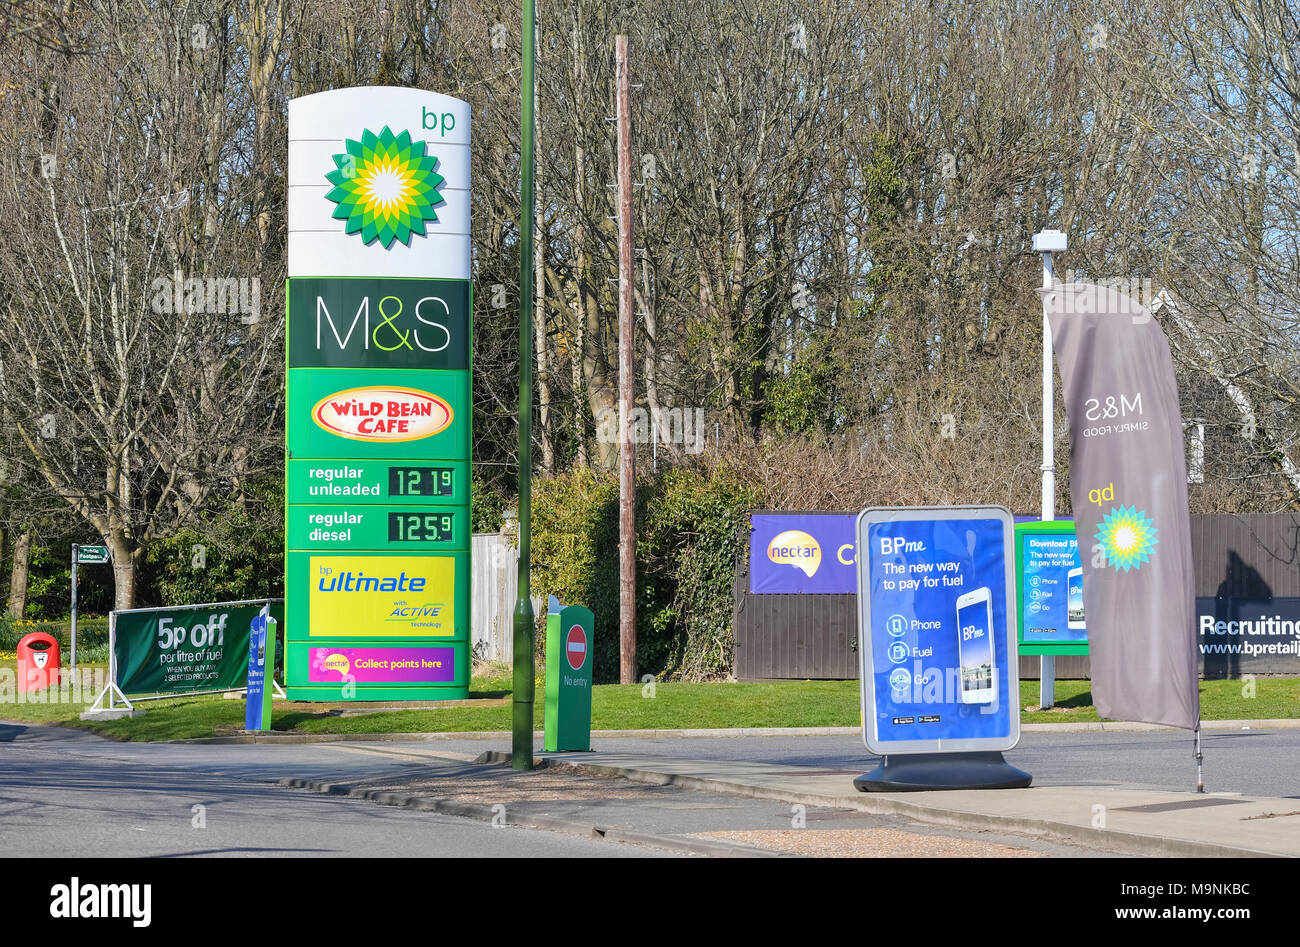 BP station de carburant pour l'achat d'essence et diesel avec boutiques sur place au Royaume-Uni. Station service BP. Banque D'Images